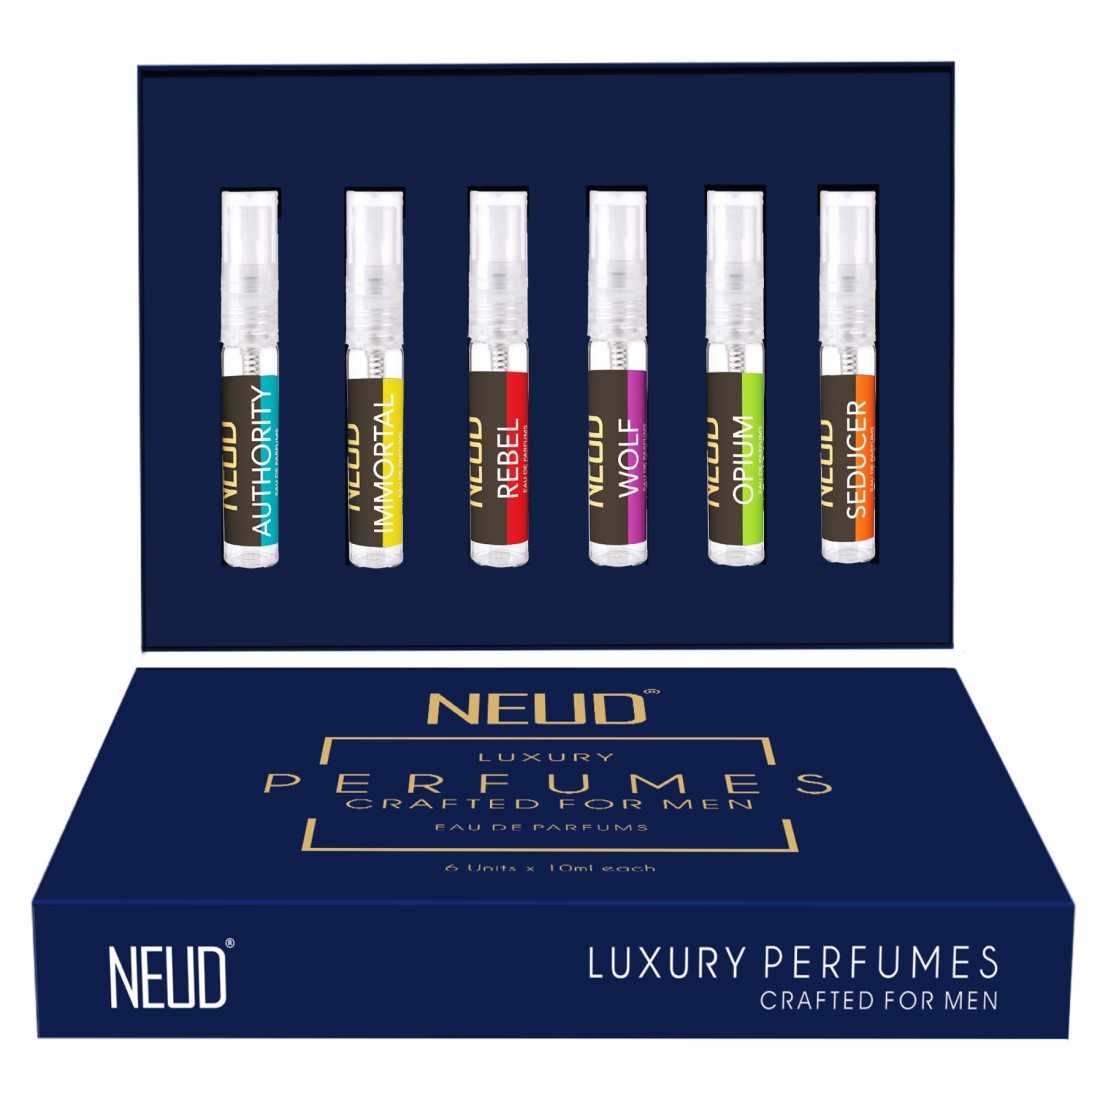 NEUD Luxury Perfumes for Men Long Lasting EDP - 6 Vials x 10ml Each